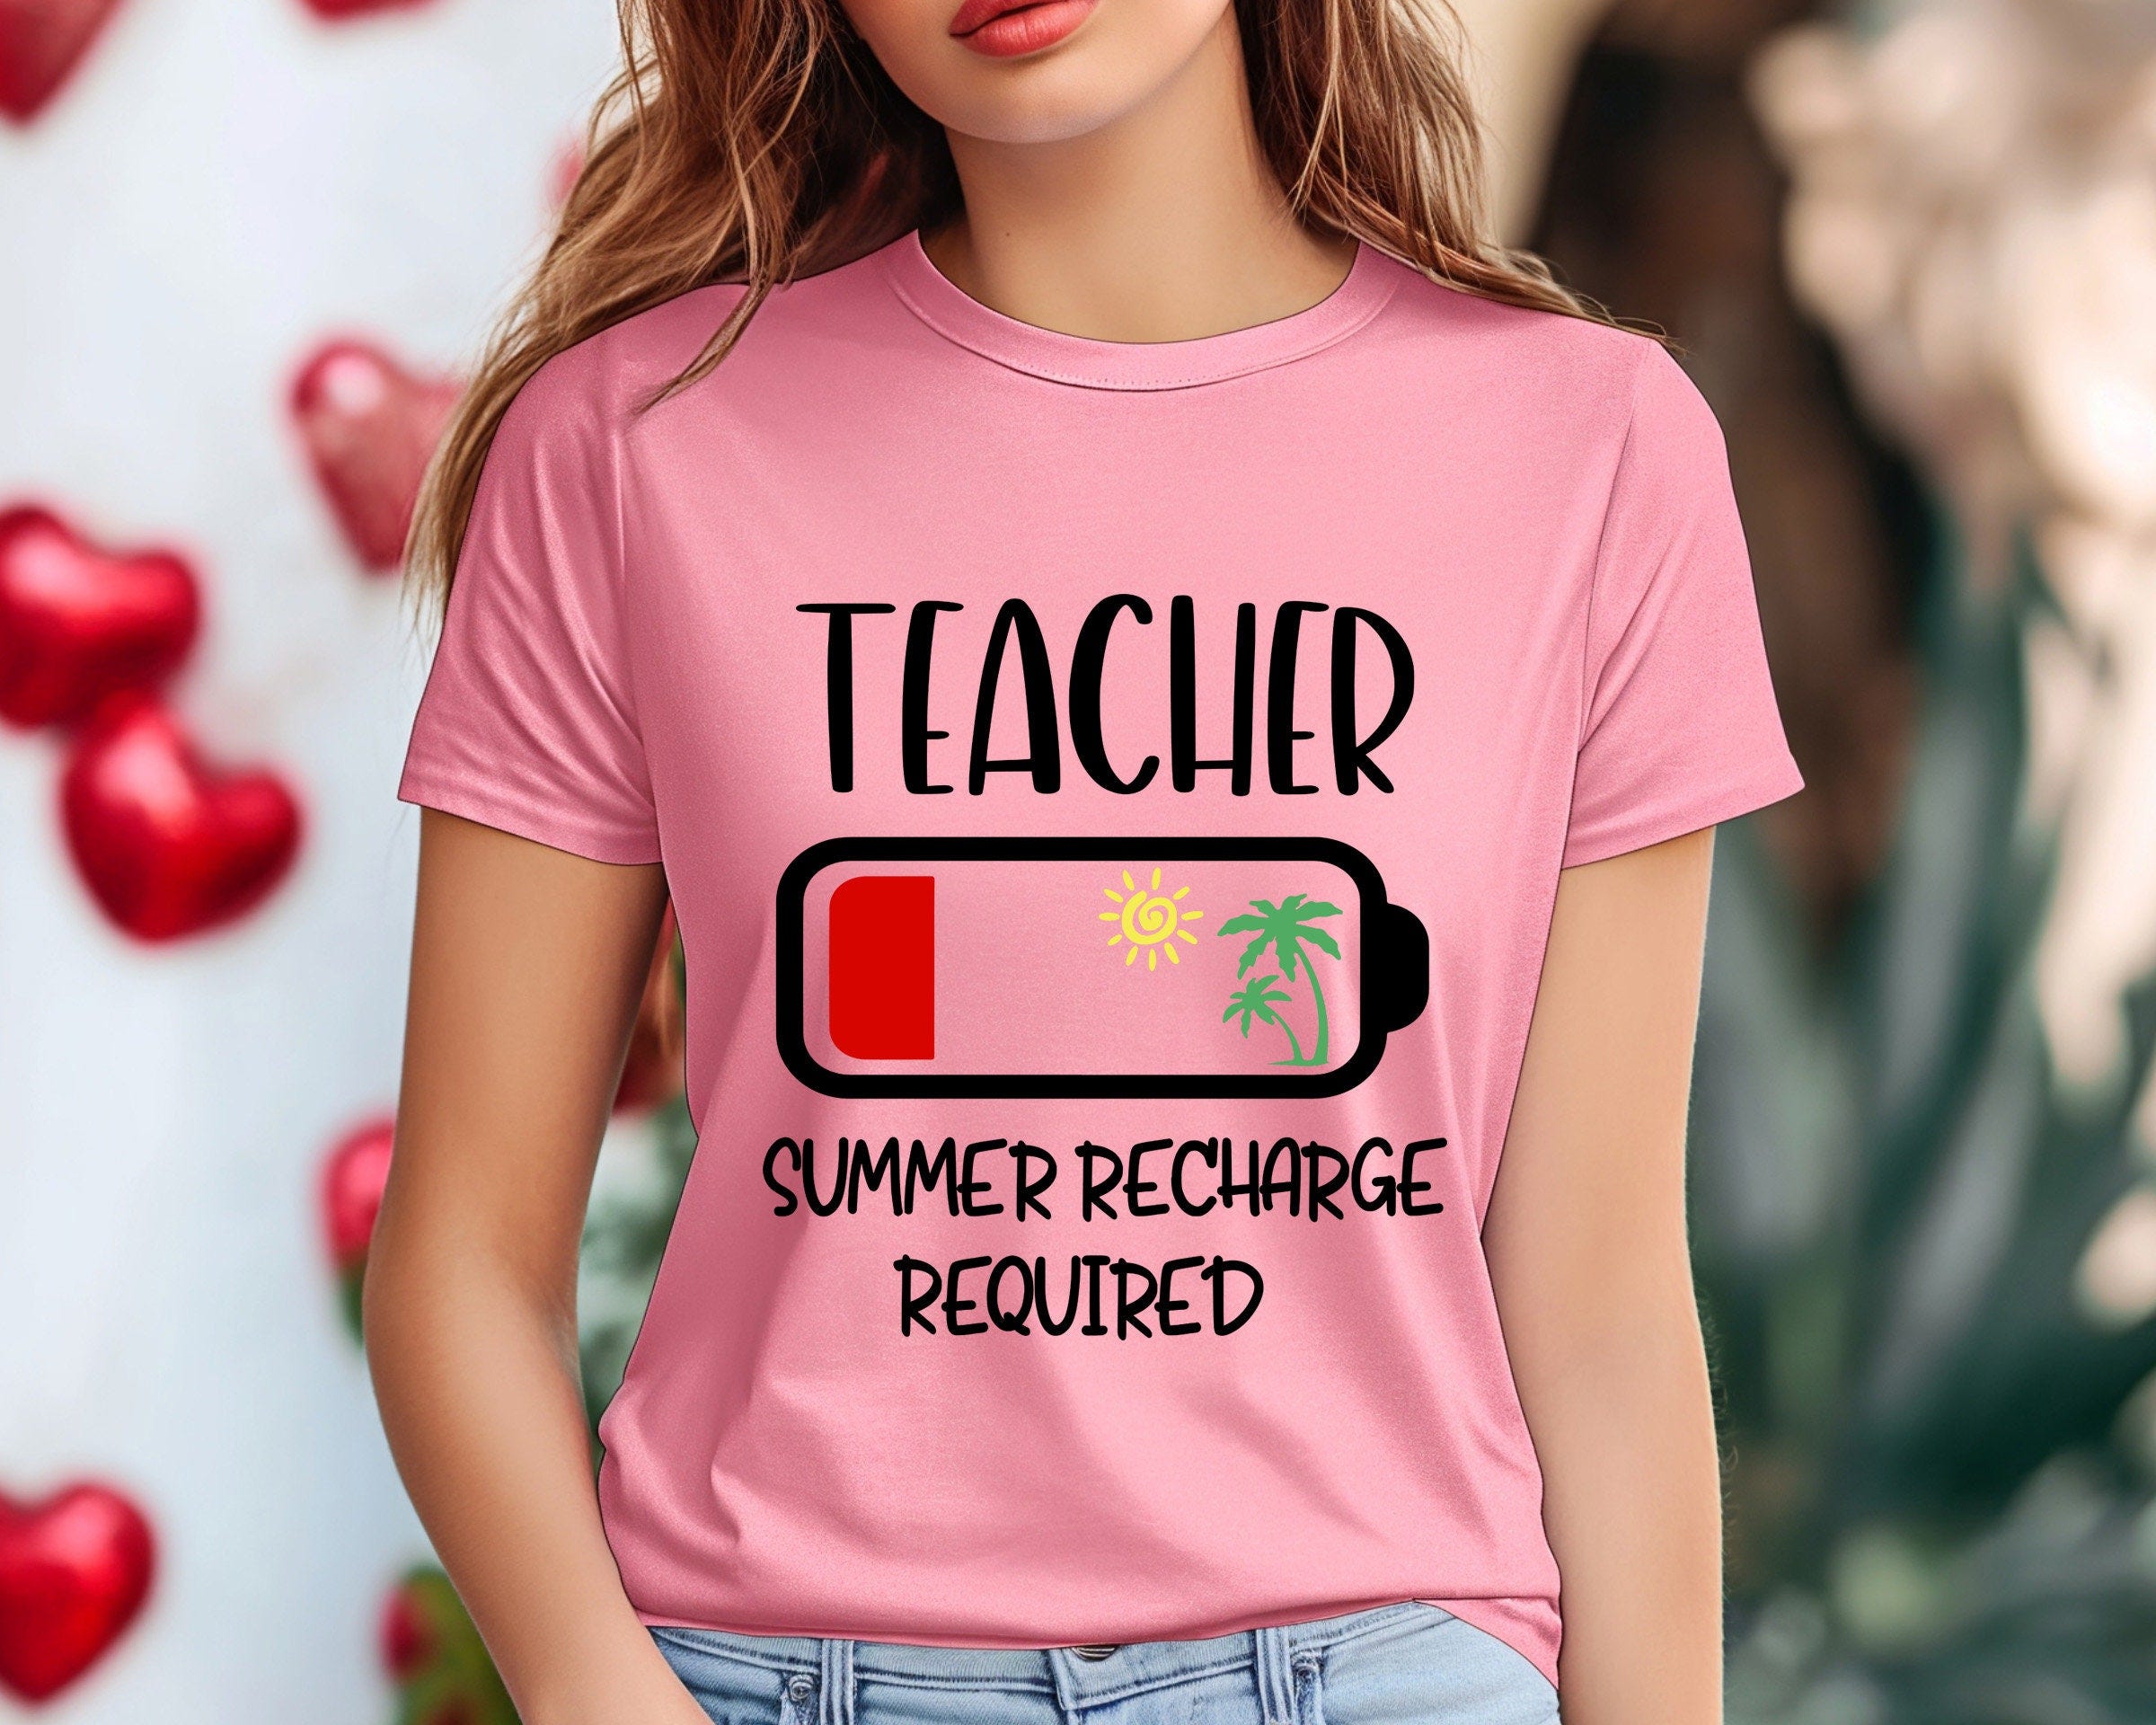 Teacher Summer Recharge Required Shirt, Cute Teacher Shirt, Graphic Shirts, Summer Vacation Shirts, End of School Gift, Unisex Shirt